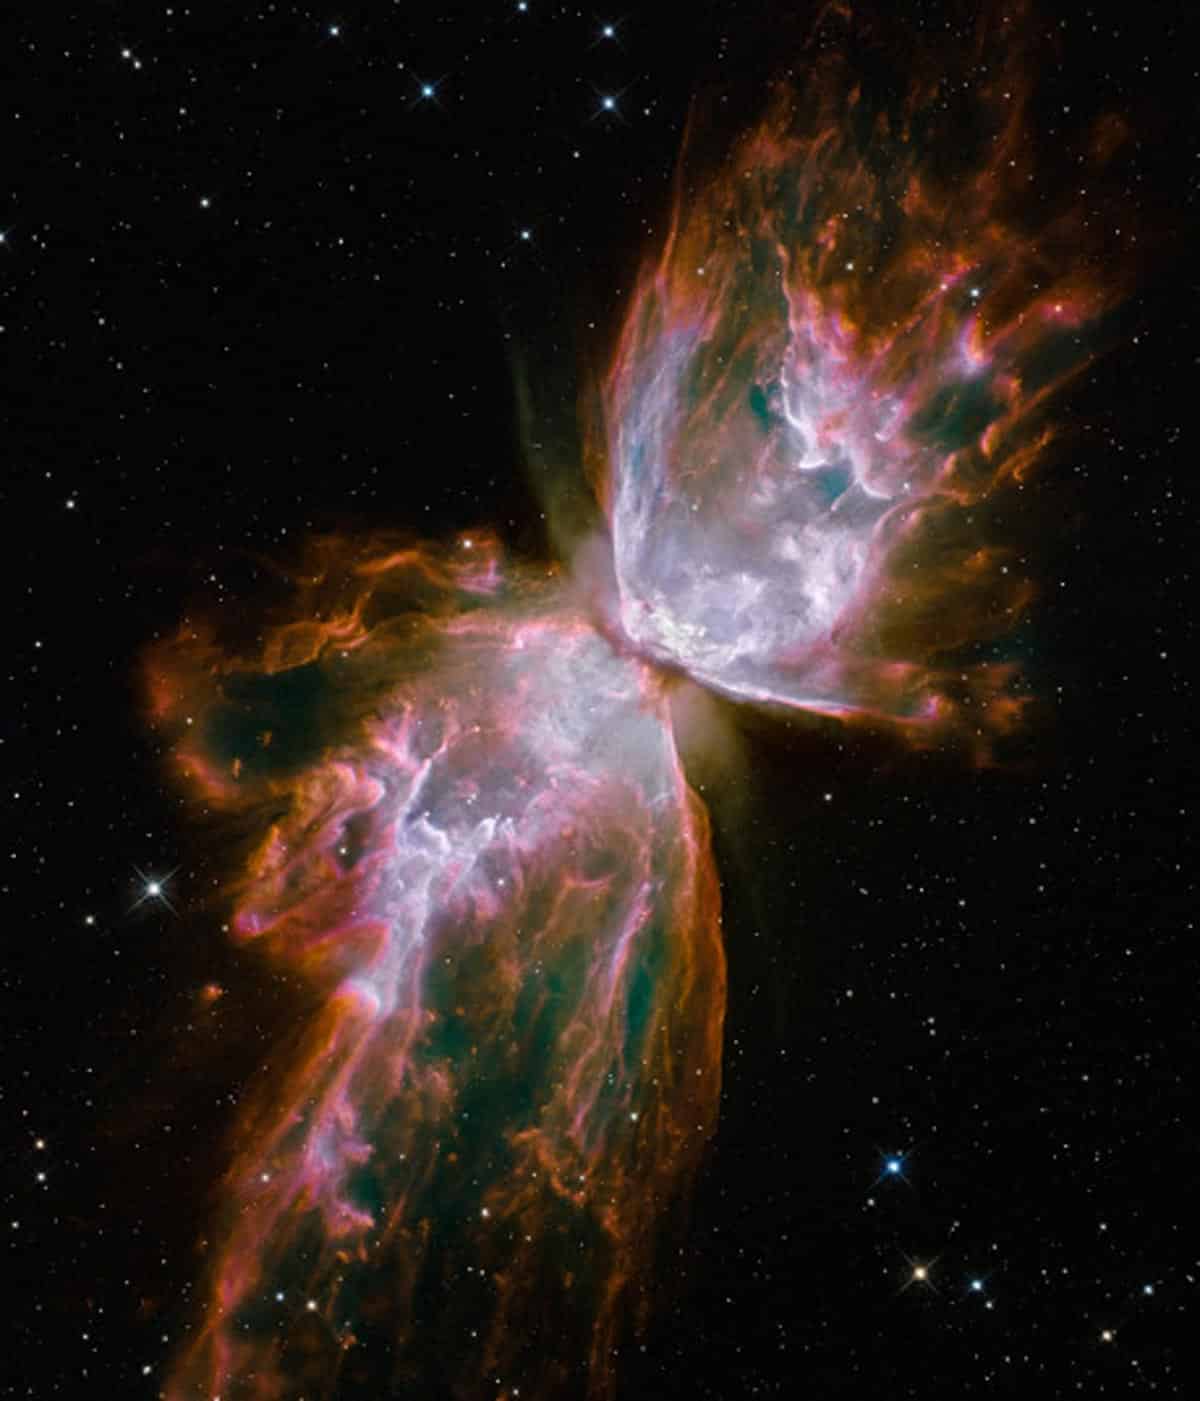 9. Ce papillon délicat est en réalité constitué de chaudrons de gaz chauffé à près de 20 000 degrés Celsius. Le gaz se déchire dans l'espace à plus de 950 000 km/h. Il s'agit d'une étoile mourante qui avait autrefois environ cinq fois la masse du soleil. Cet objet est un exemple d'une nébuleuse planétaire, ainsi nommé parce que beaucoup d'entre elles ont un aspect rond qui ressemble à celle d'une planète vue à travers un petit télescope. (Photo : NASA/ESA/Hubble)